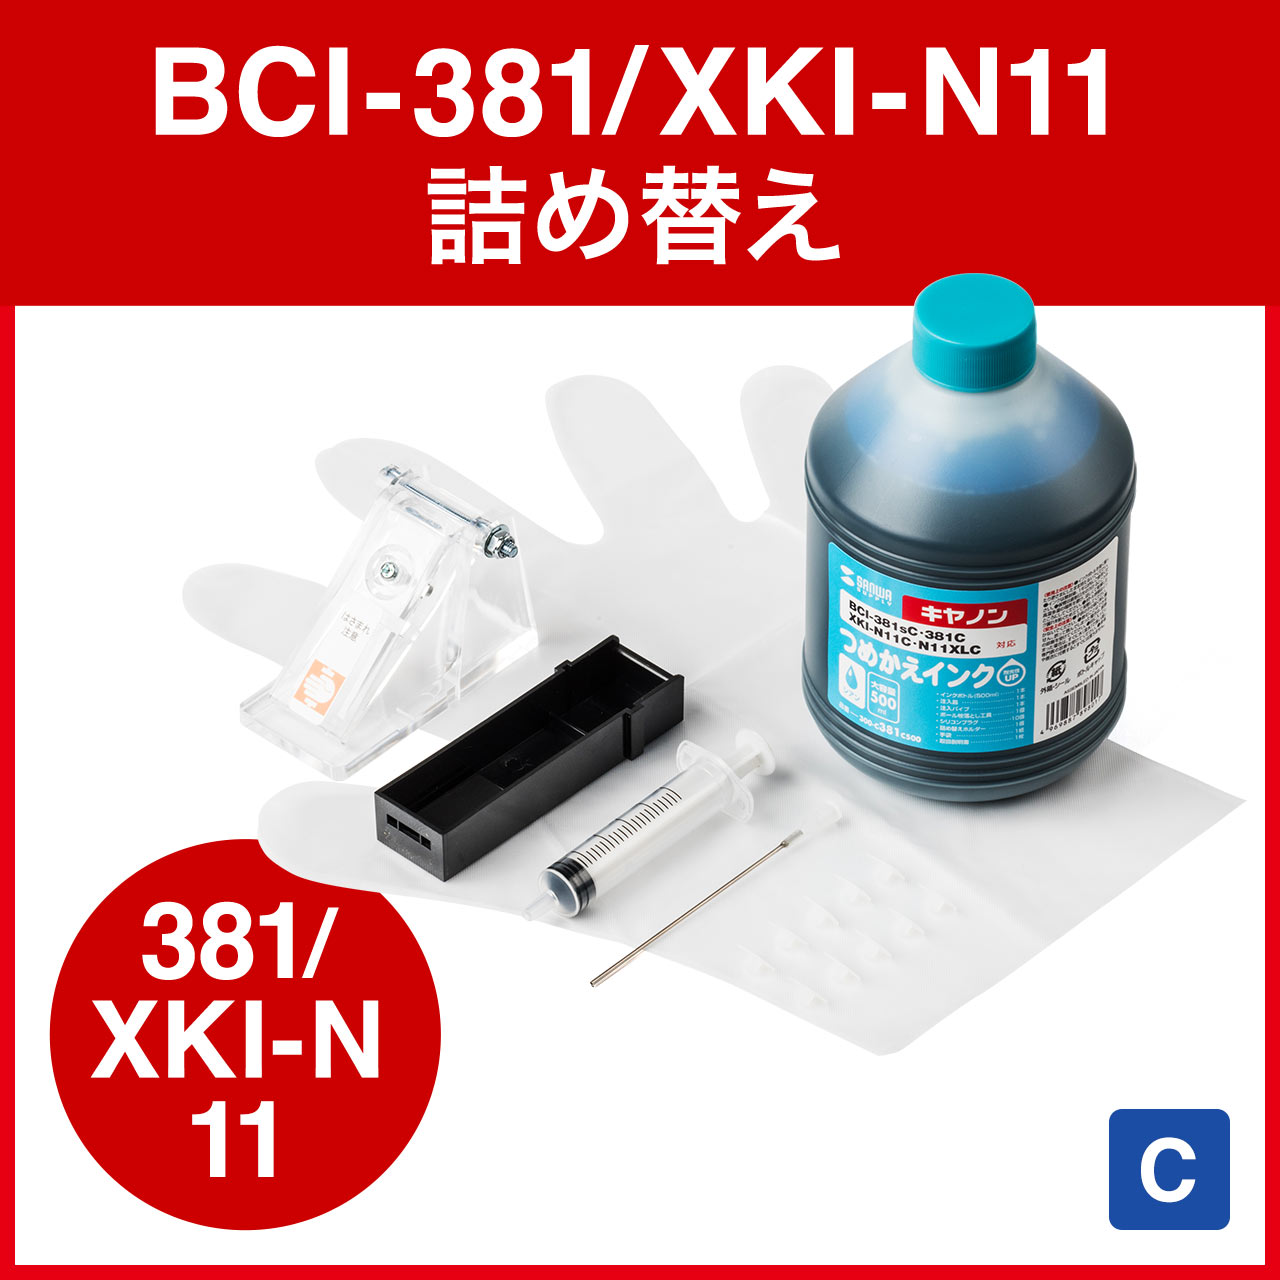 y1񂠂̋lߑւ49~zlߑւCN BCI-381C/XKI-N11C 71񕪁iVAE500mlEHtj 300-C381C500